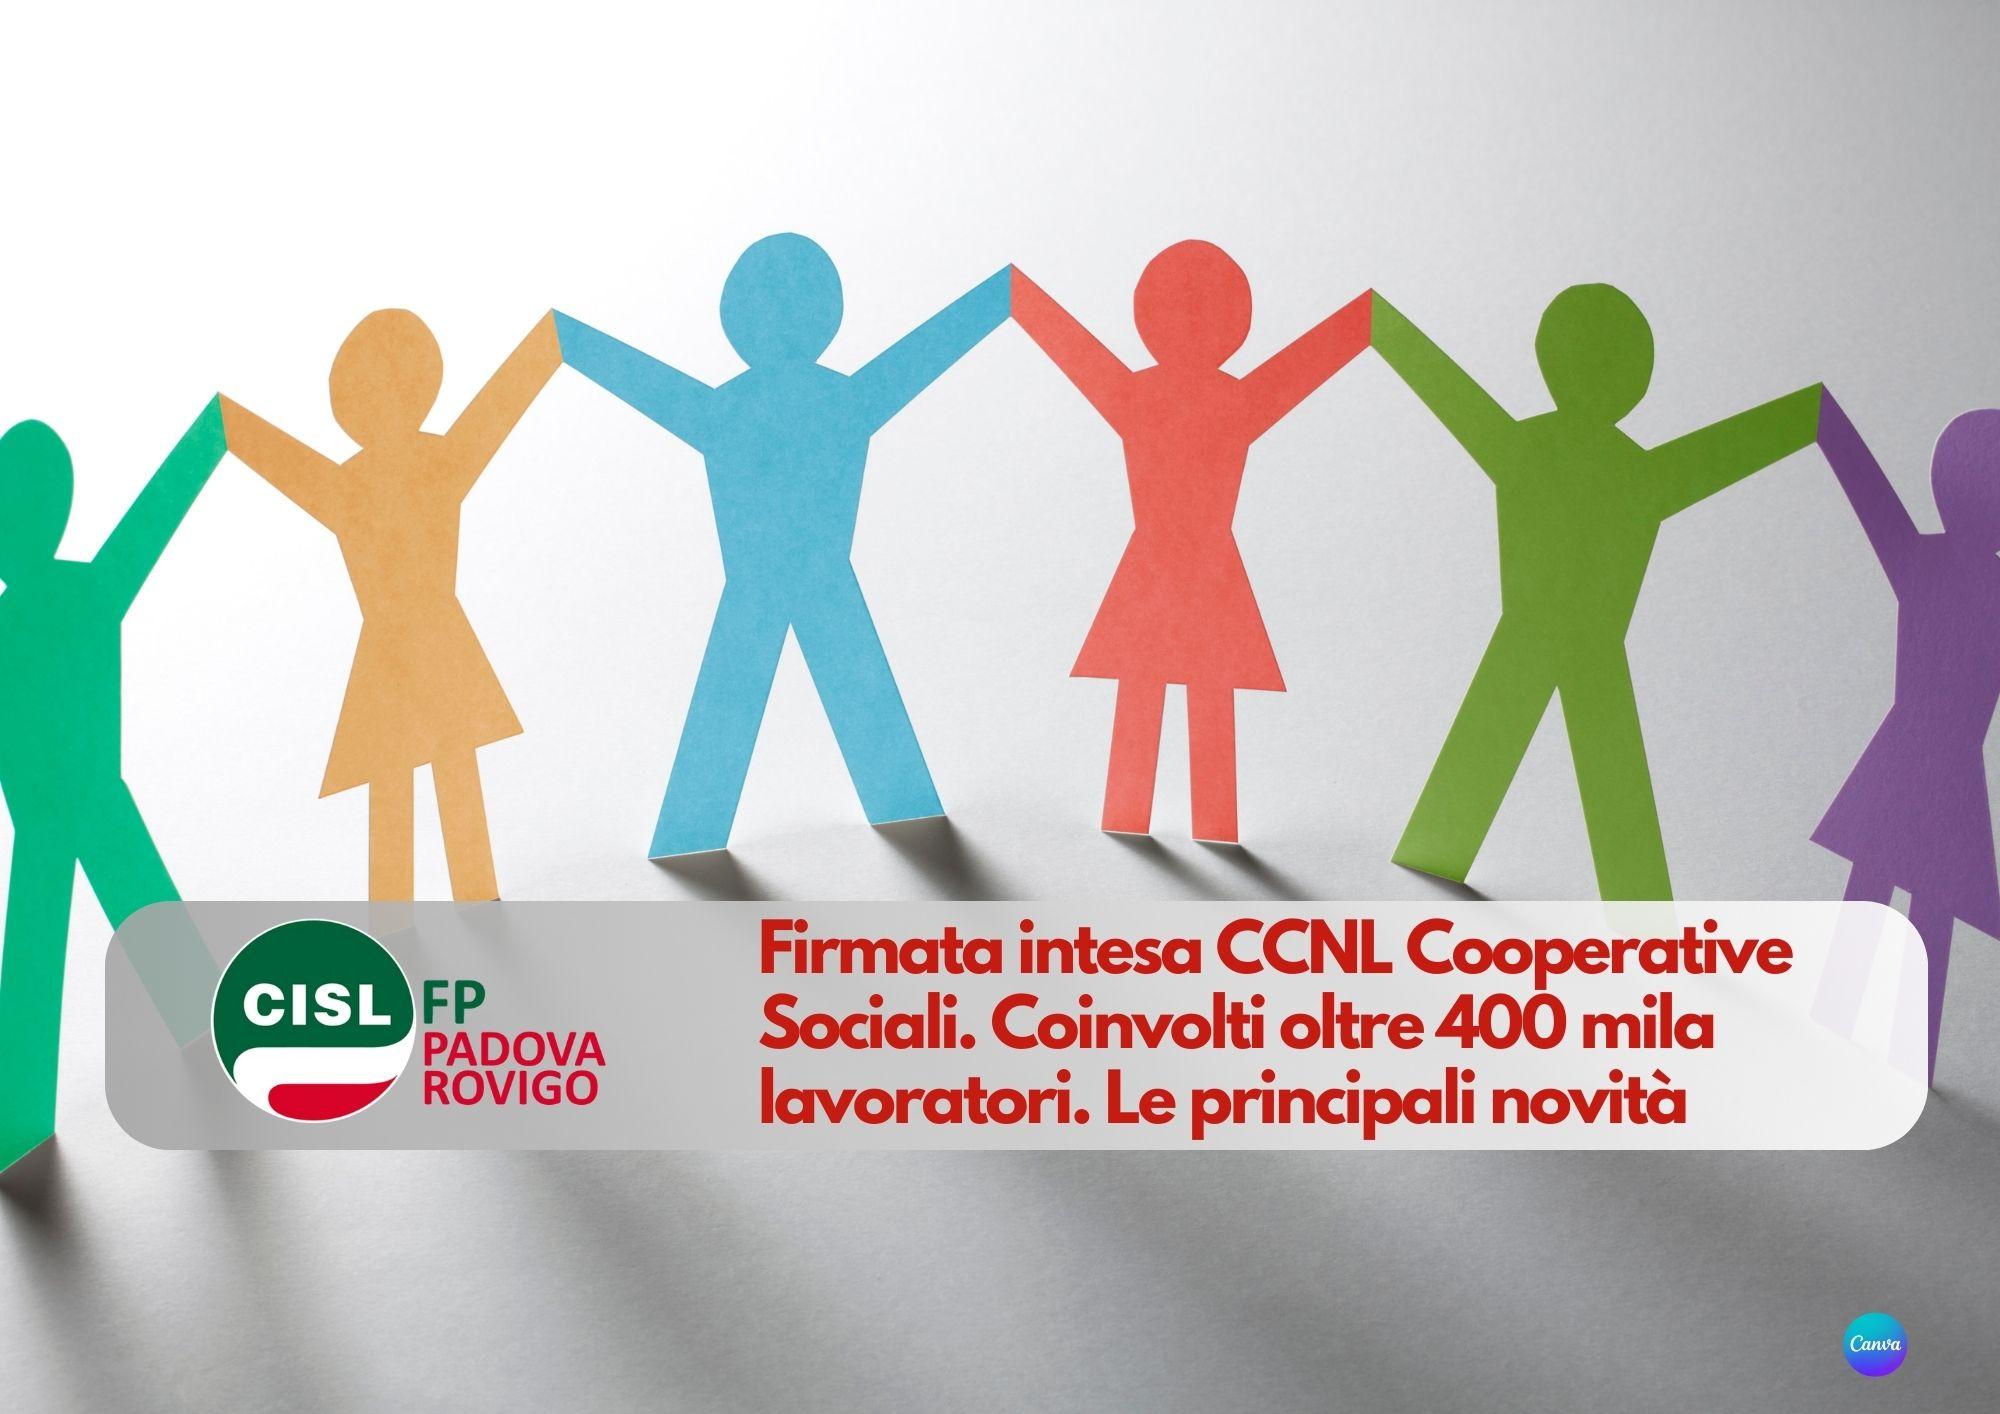 CISL FP Padova Rovigo. Firmata intesa CCNL Cooperative Sociali. Coinvolti oltre 400 mila lavoratori. Le novità